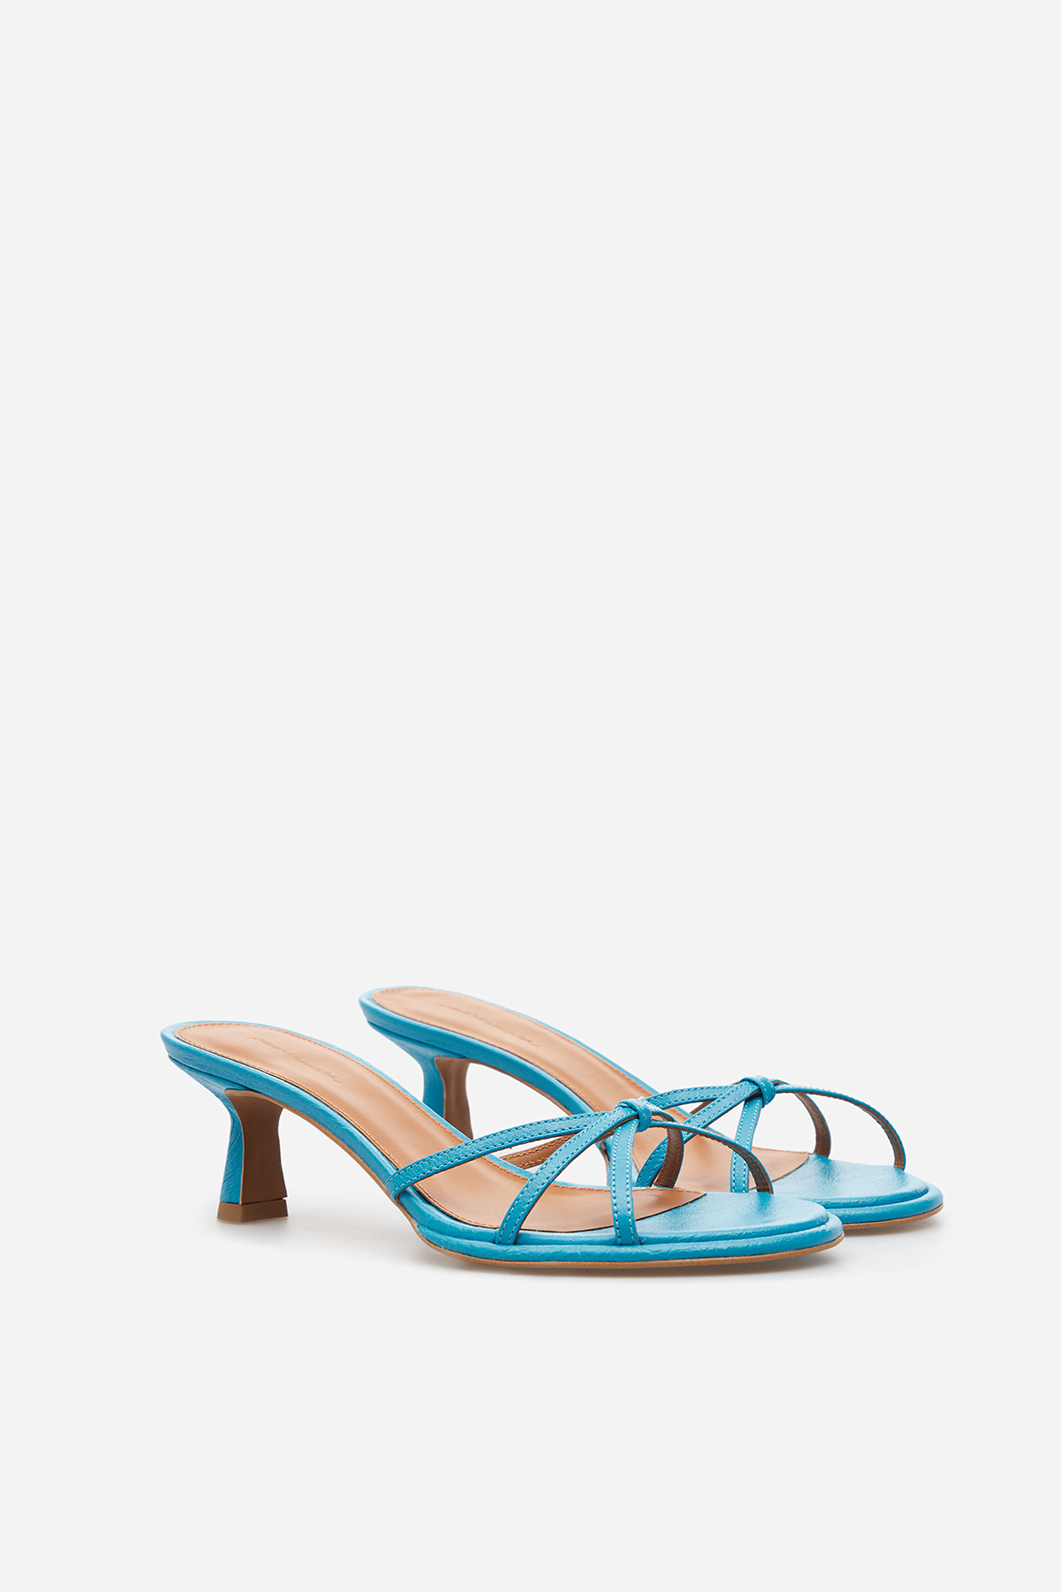 Mona blue leather
sandals /5 cm/